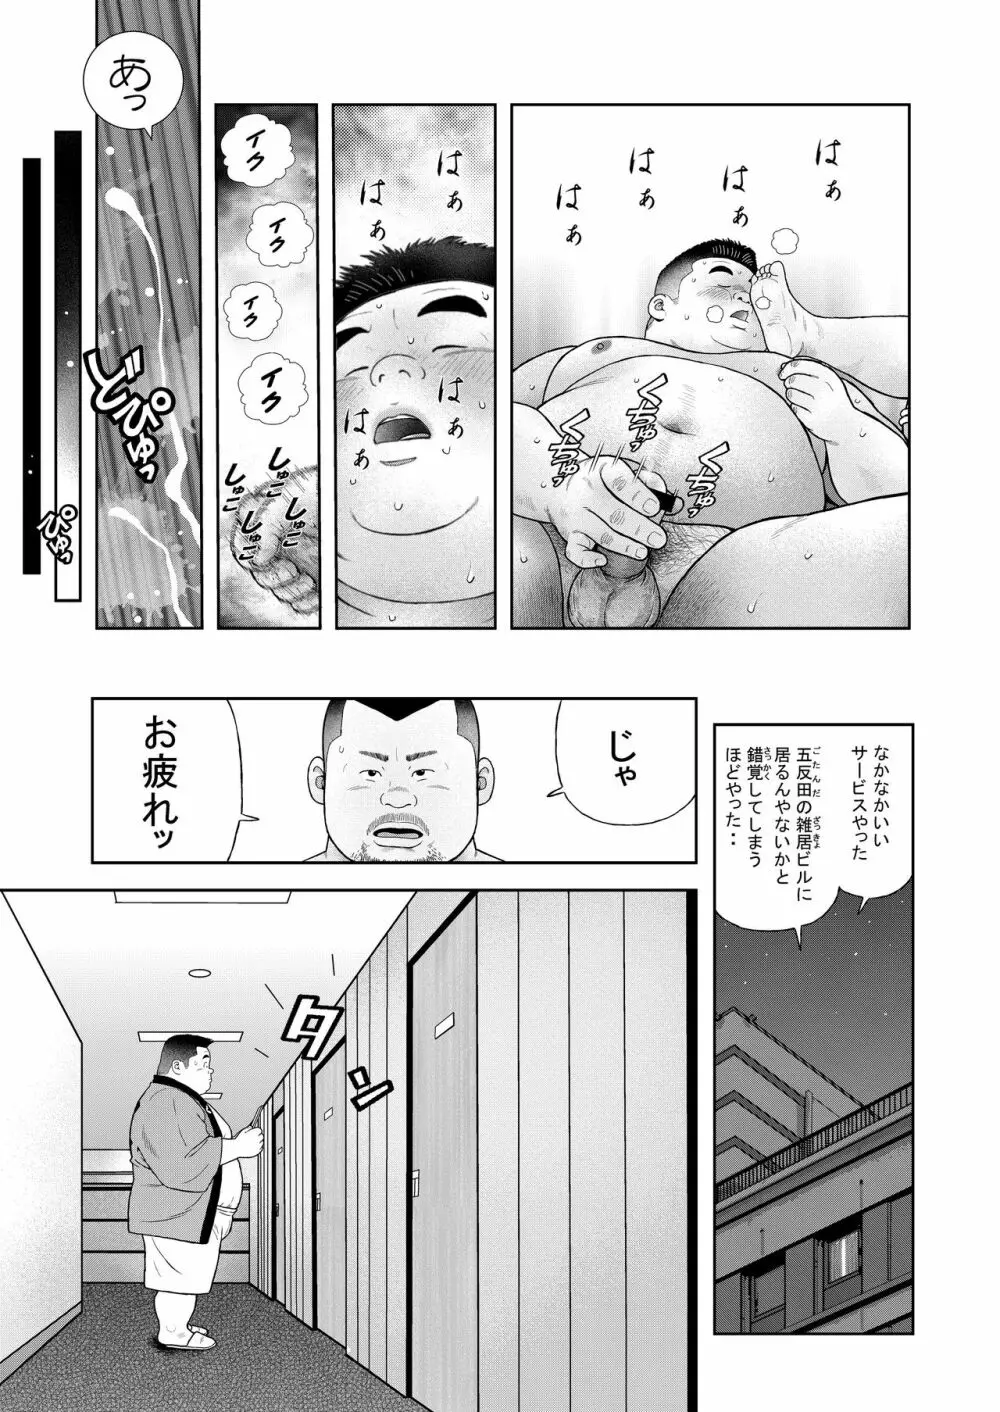 くの湯 四発め 芸人の性 - page23